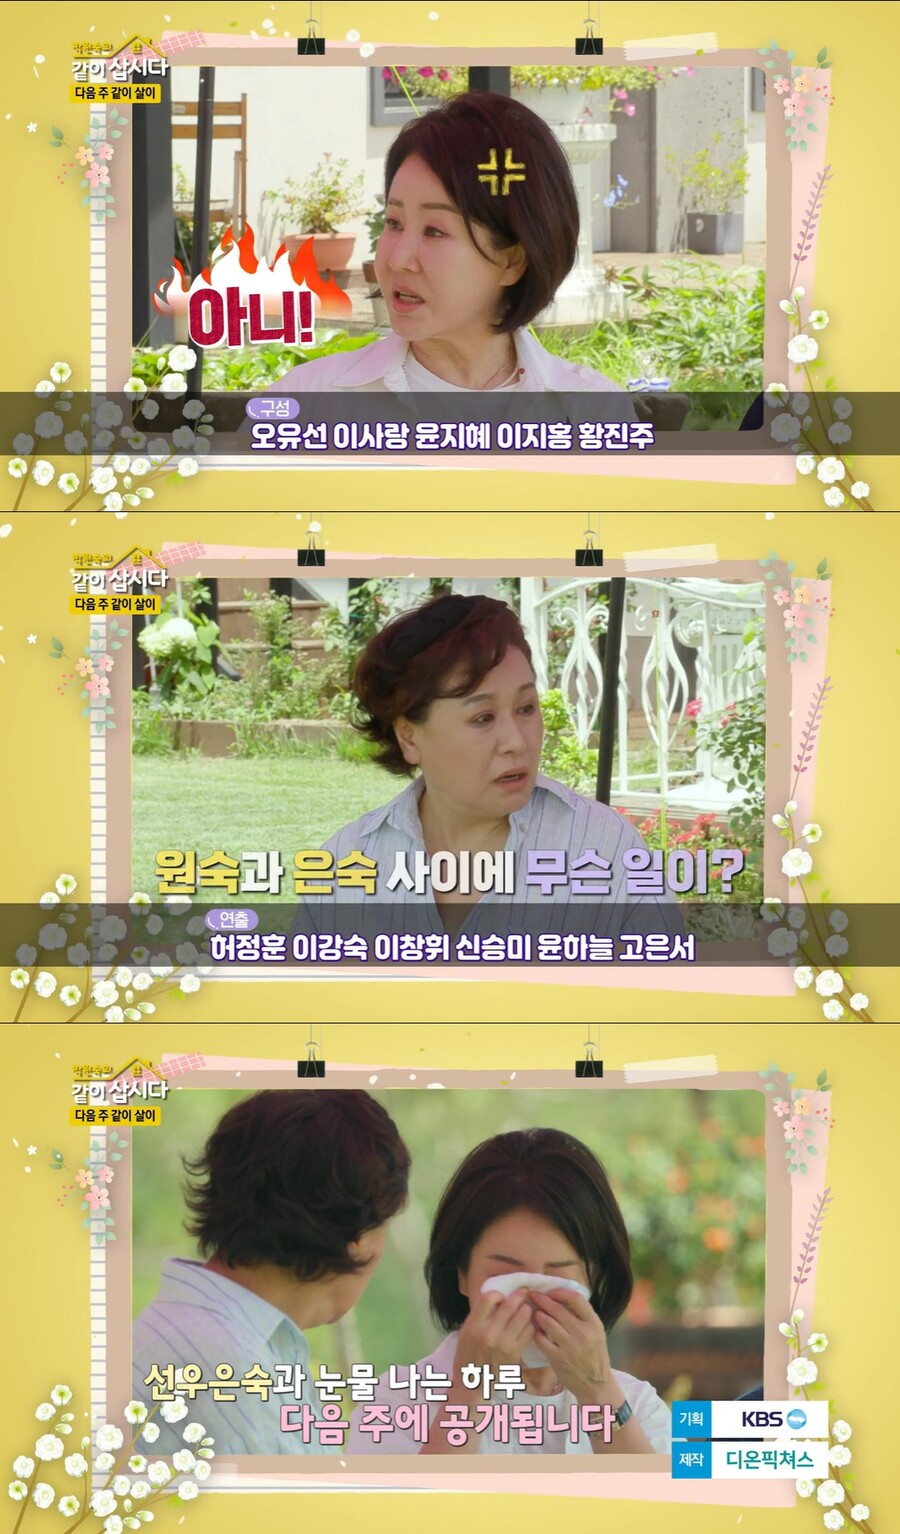 ▲ KBS2 예능프로그램 '박원숙의 같이 삽시다' 배우 선우은숙. 출처| KBS